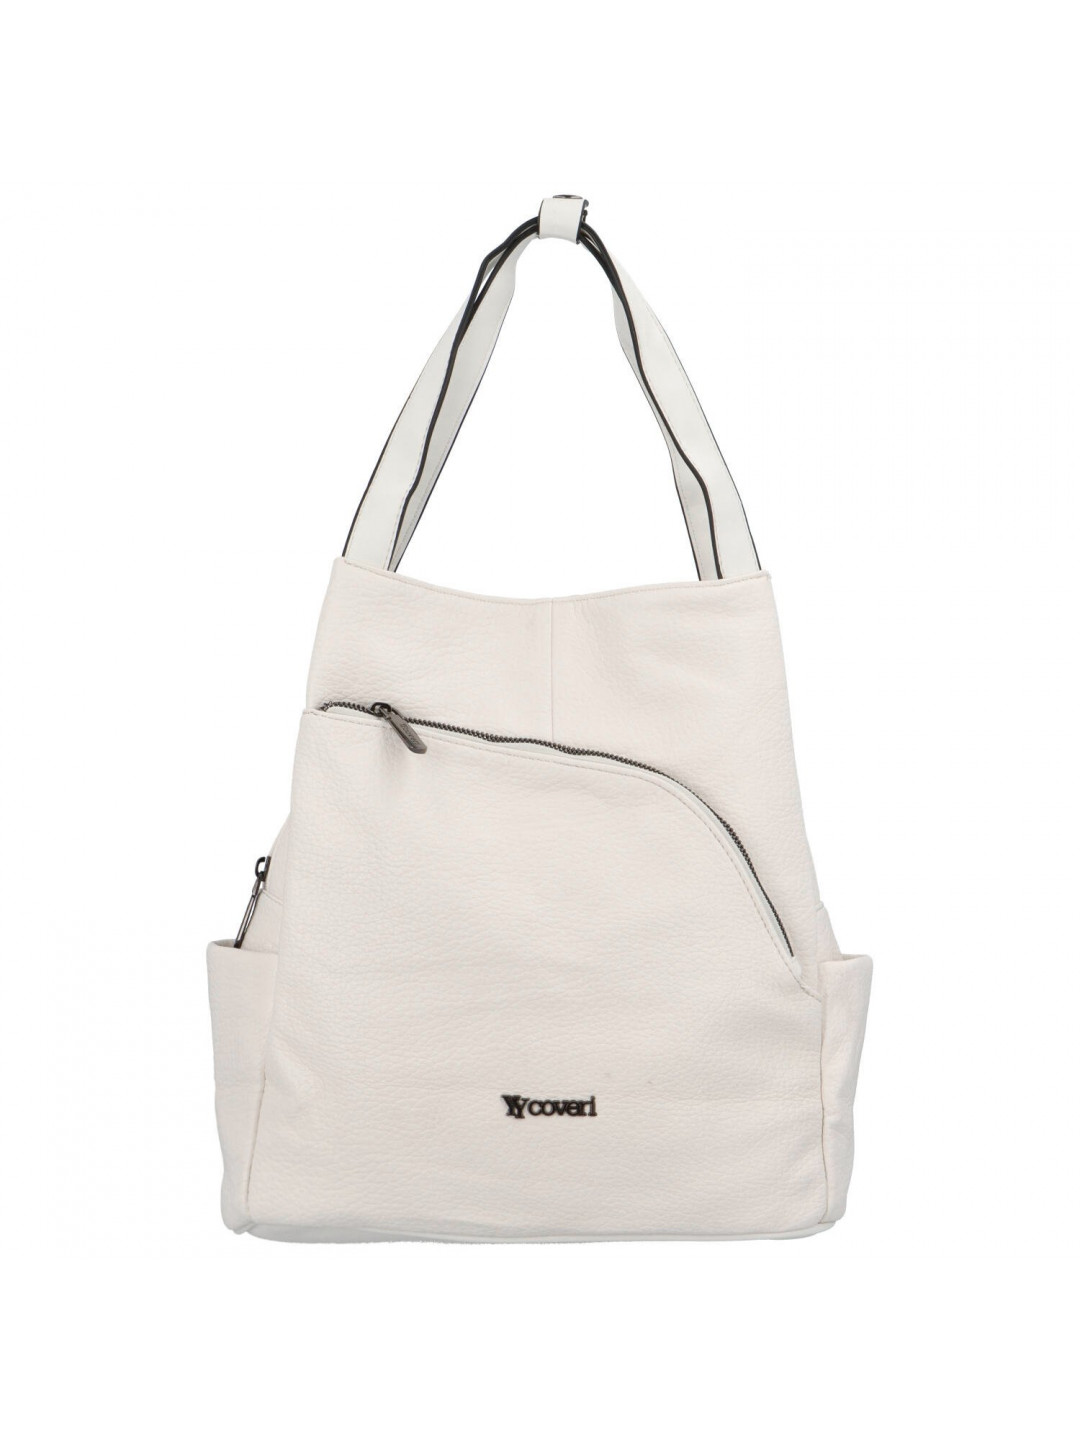 Dámská kabelka batoh bílá – Coveri Admuta